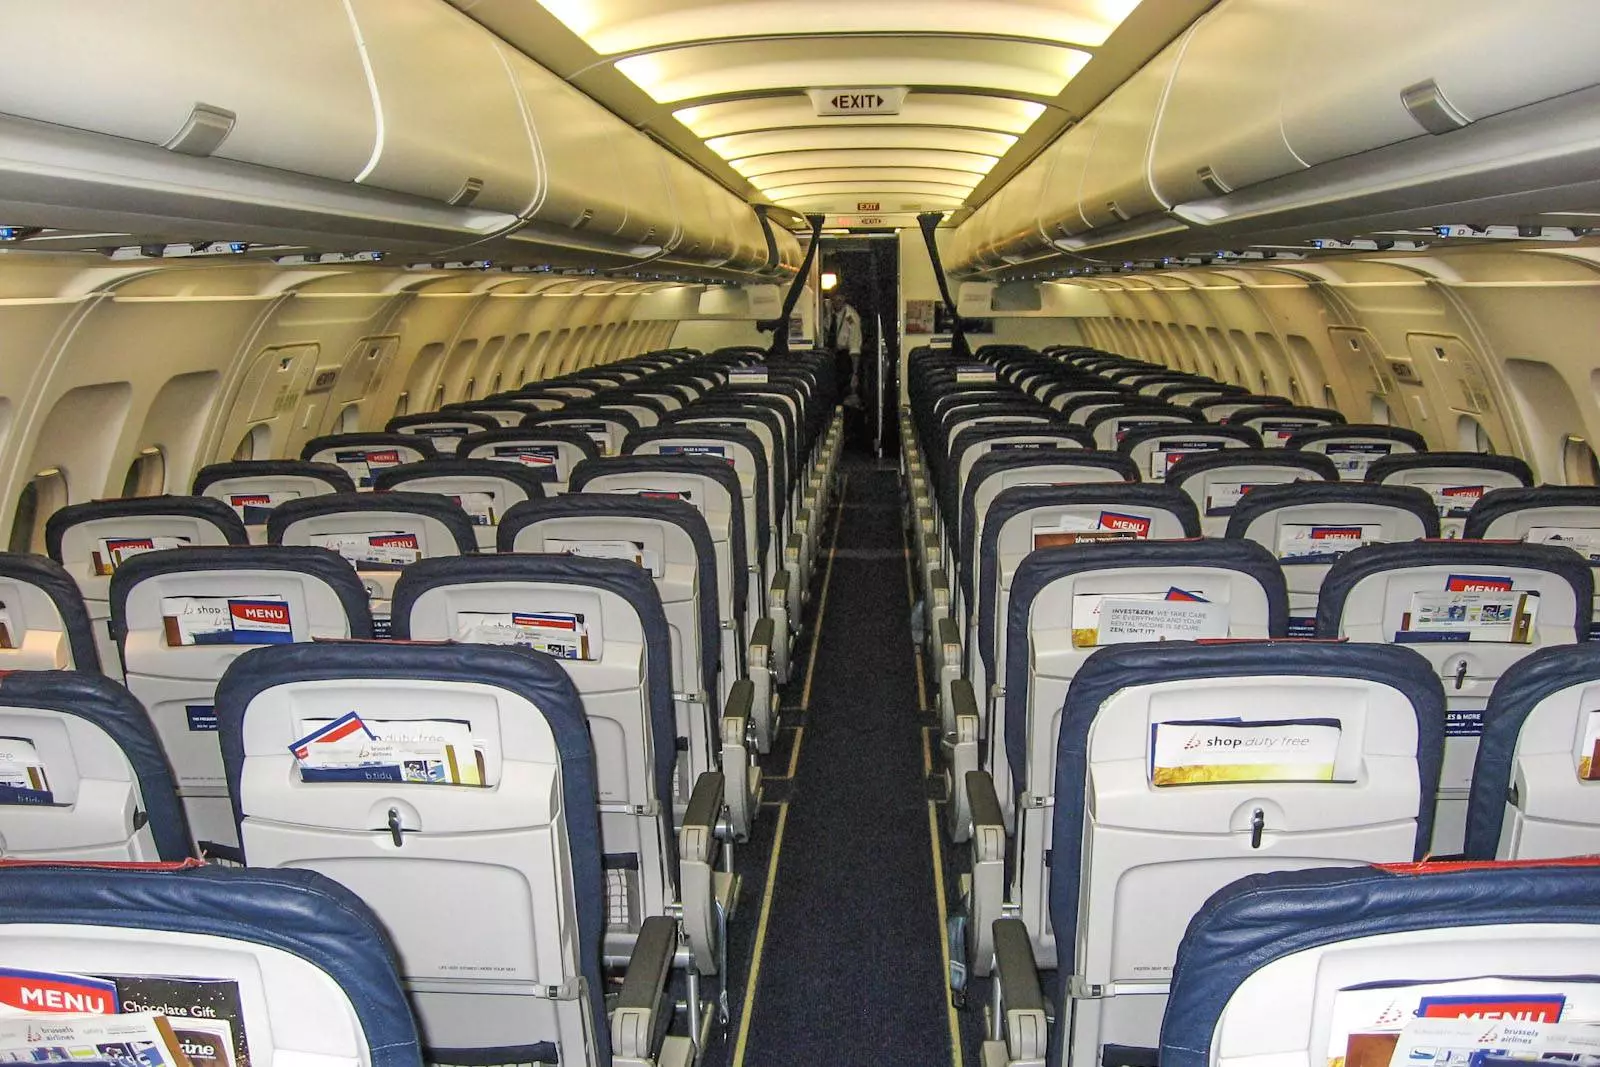 Аэробус а320 аэрофлот: схема салона и лучшие места на борту